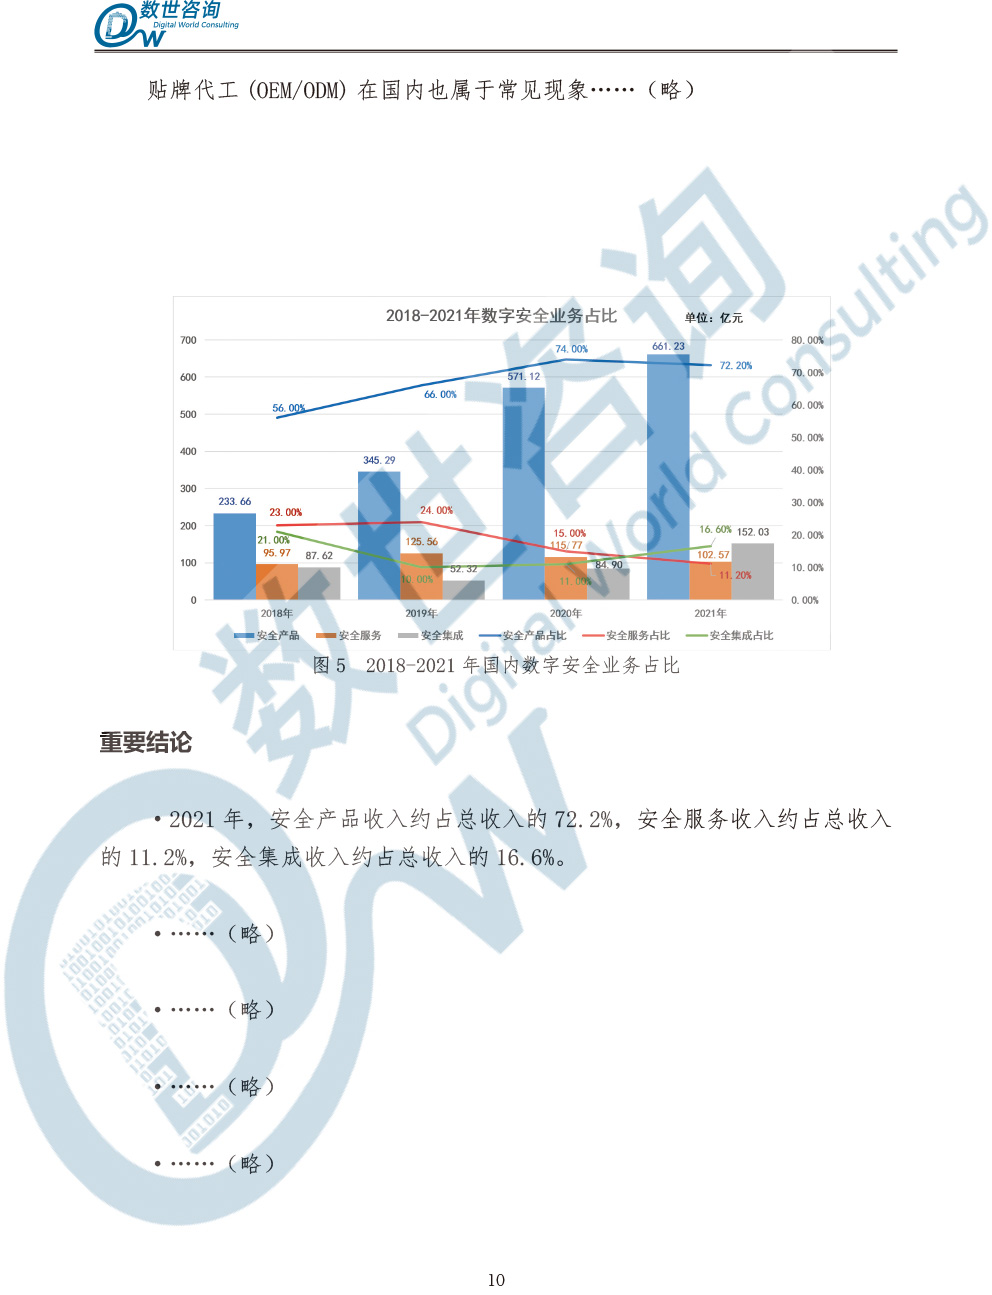 中国数字安全产业统计与分析报告(2022)图-17.jpg